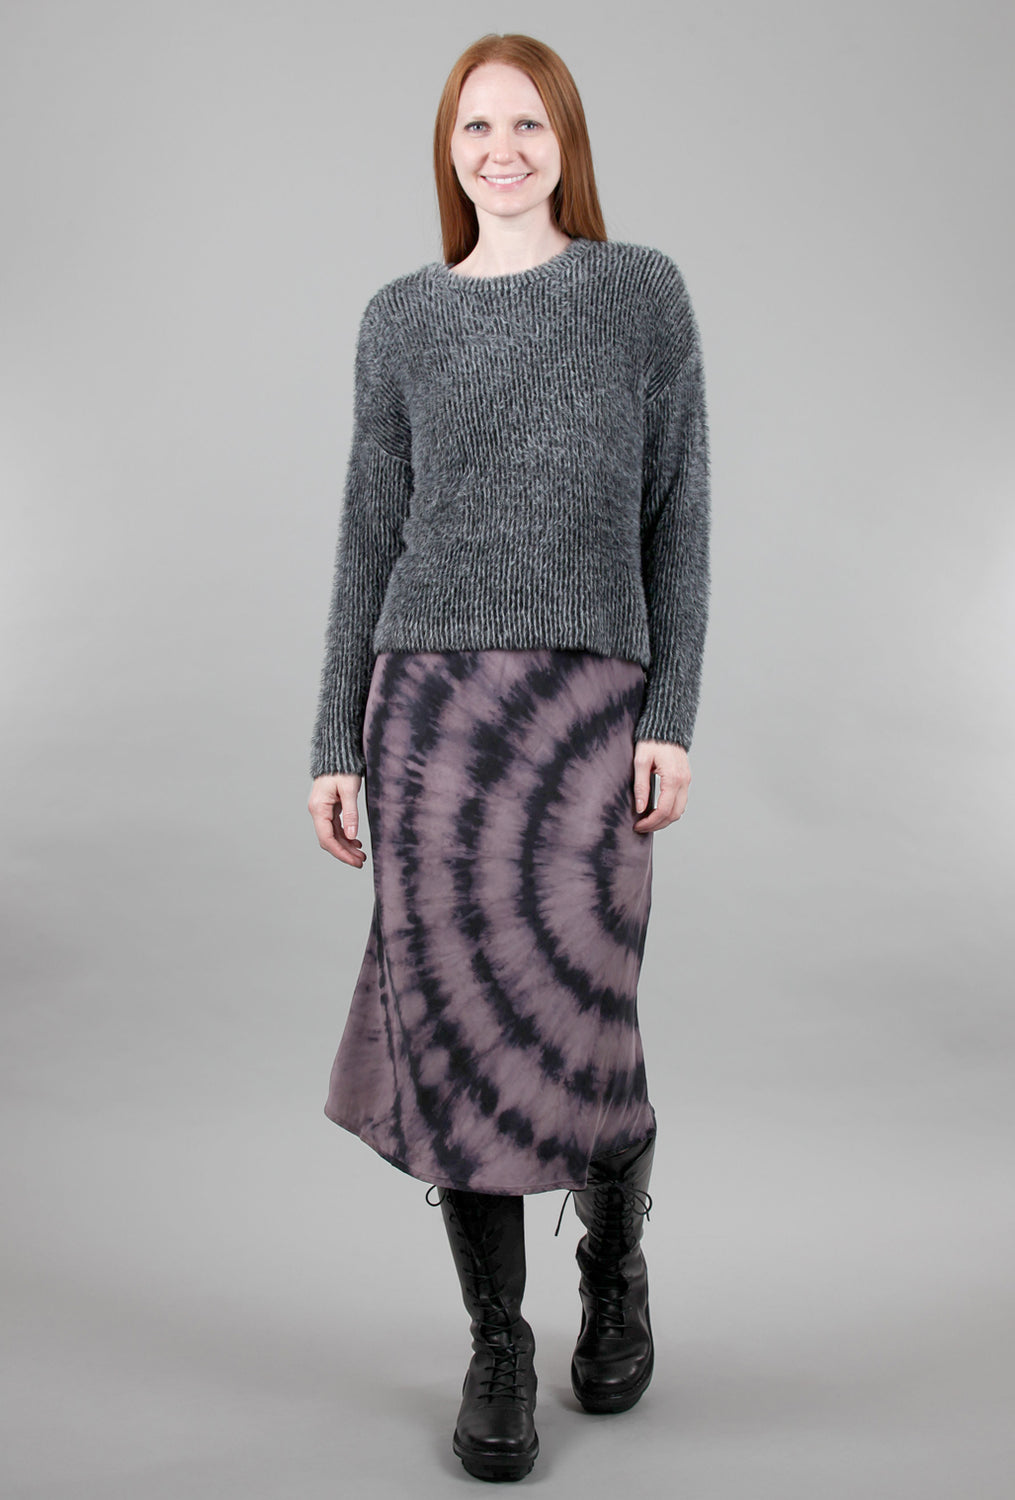 Circle Tie-Dye Midi Skirt, Lavender